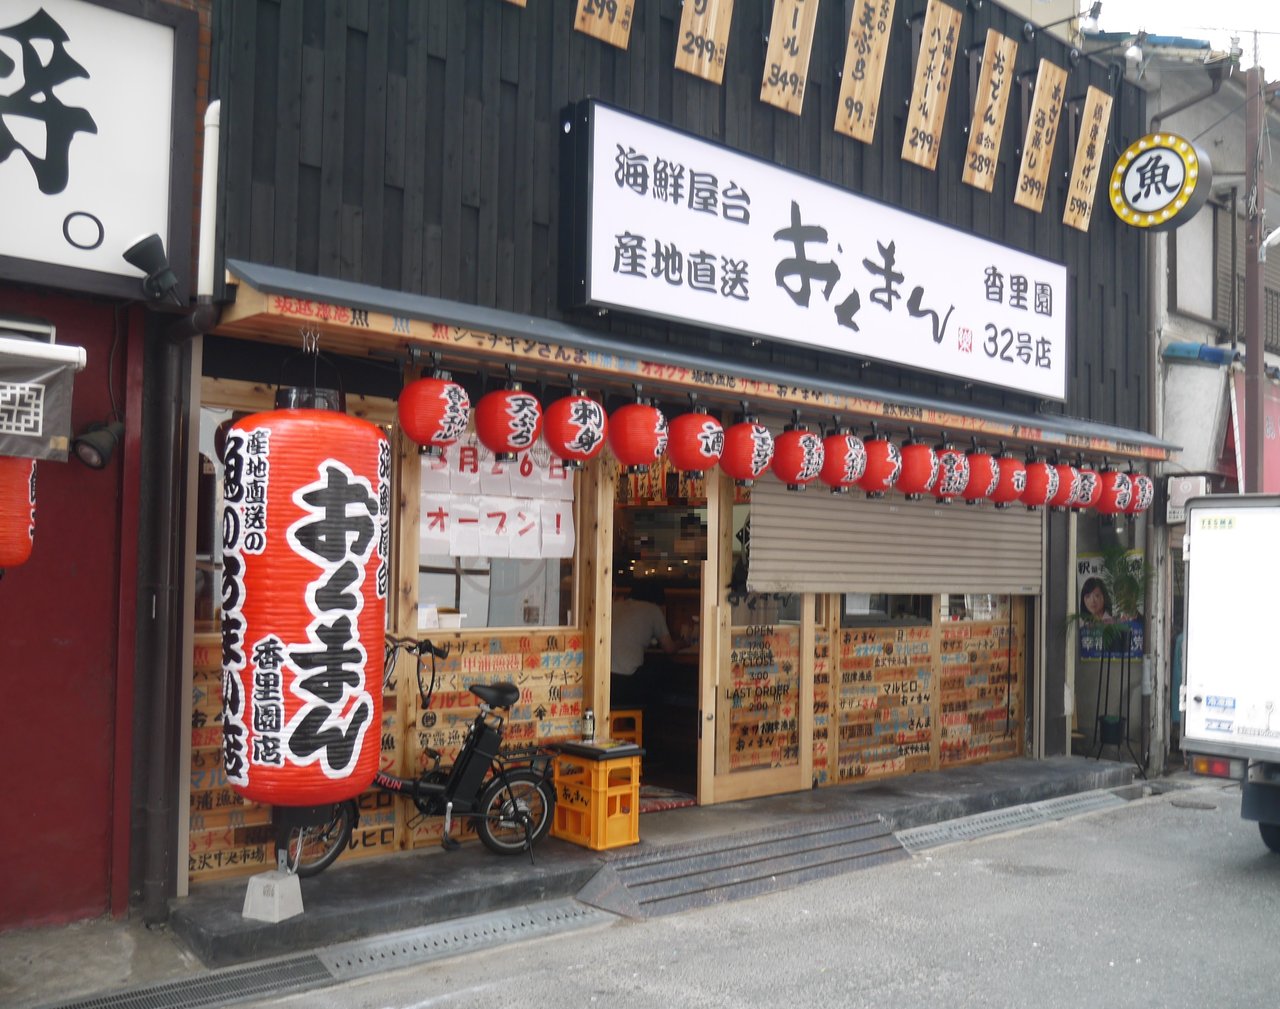 香里センター街に 海鮮屋台おくまん が開店 海鮮や天ぷらなどを味わえる大衆価格の居酒屋 寝屋川つーしん